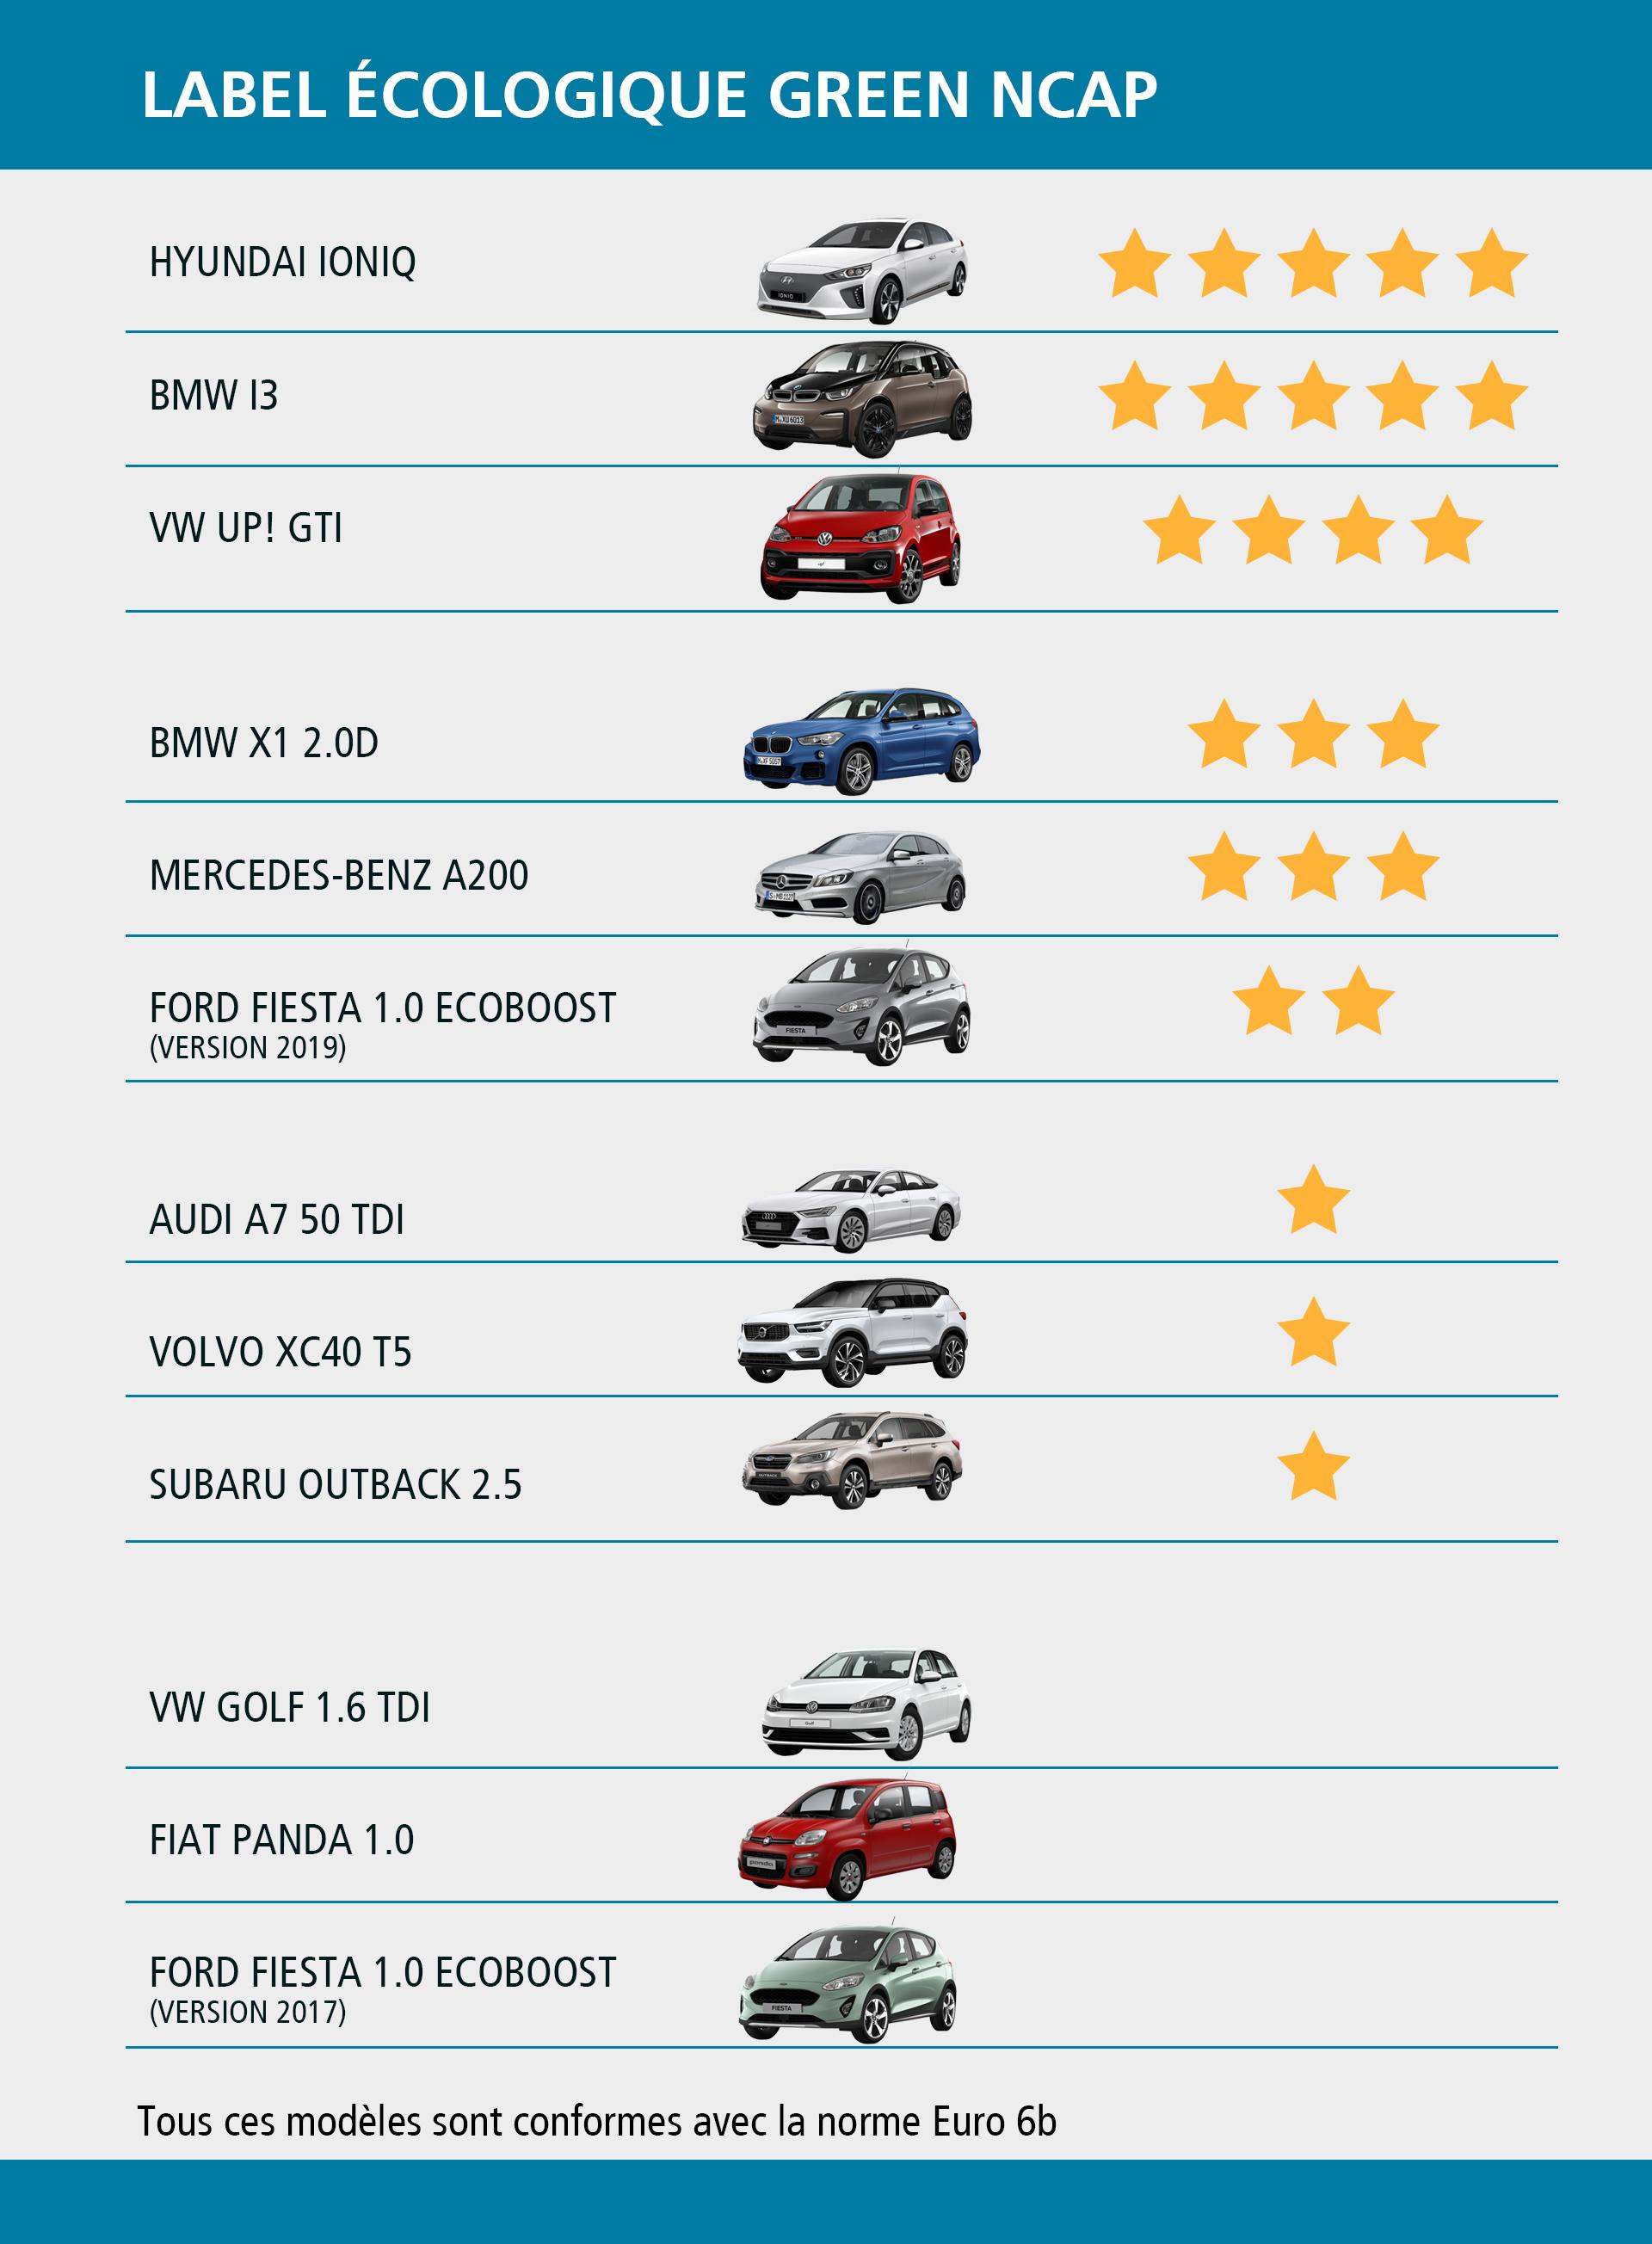 Classement de 12 voitures selon le label écologique Green NCAP.